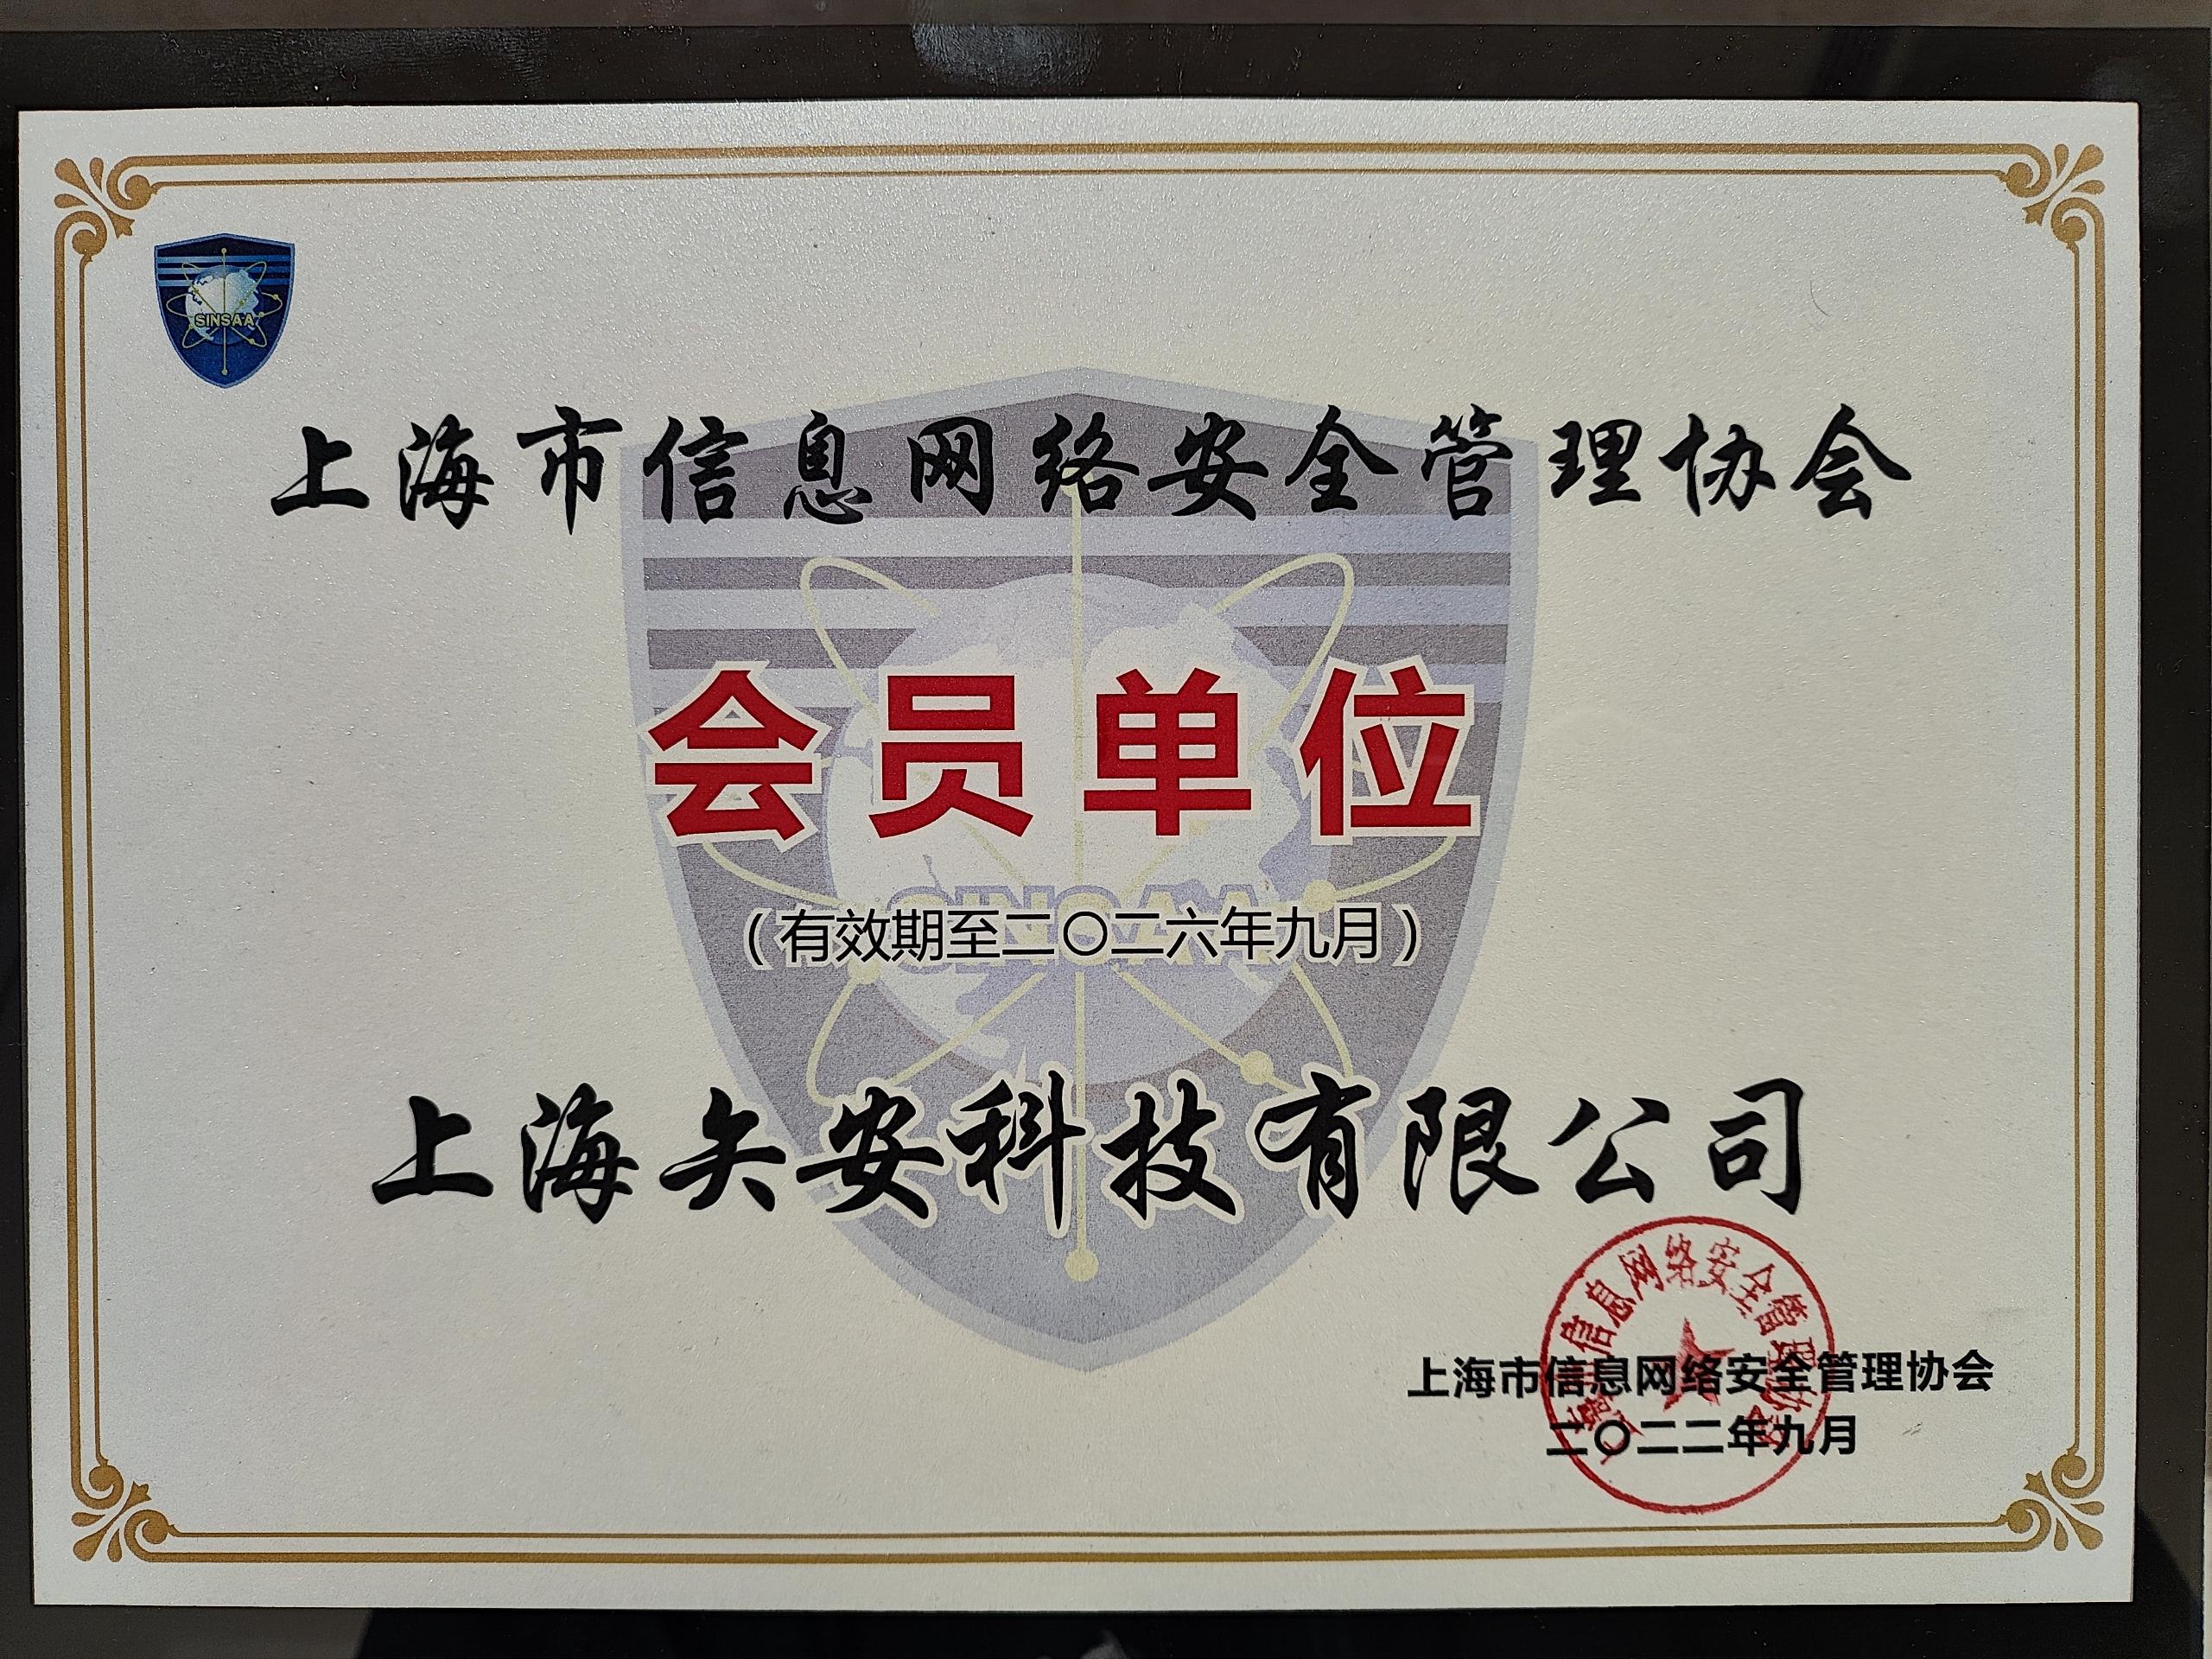 上海市信息网络安全管理协会会员单位